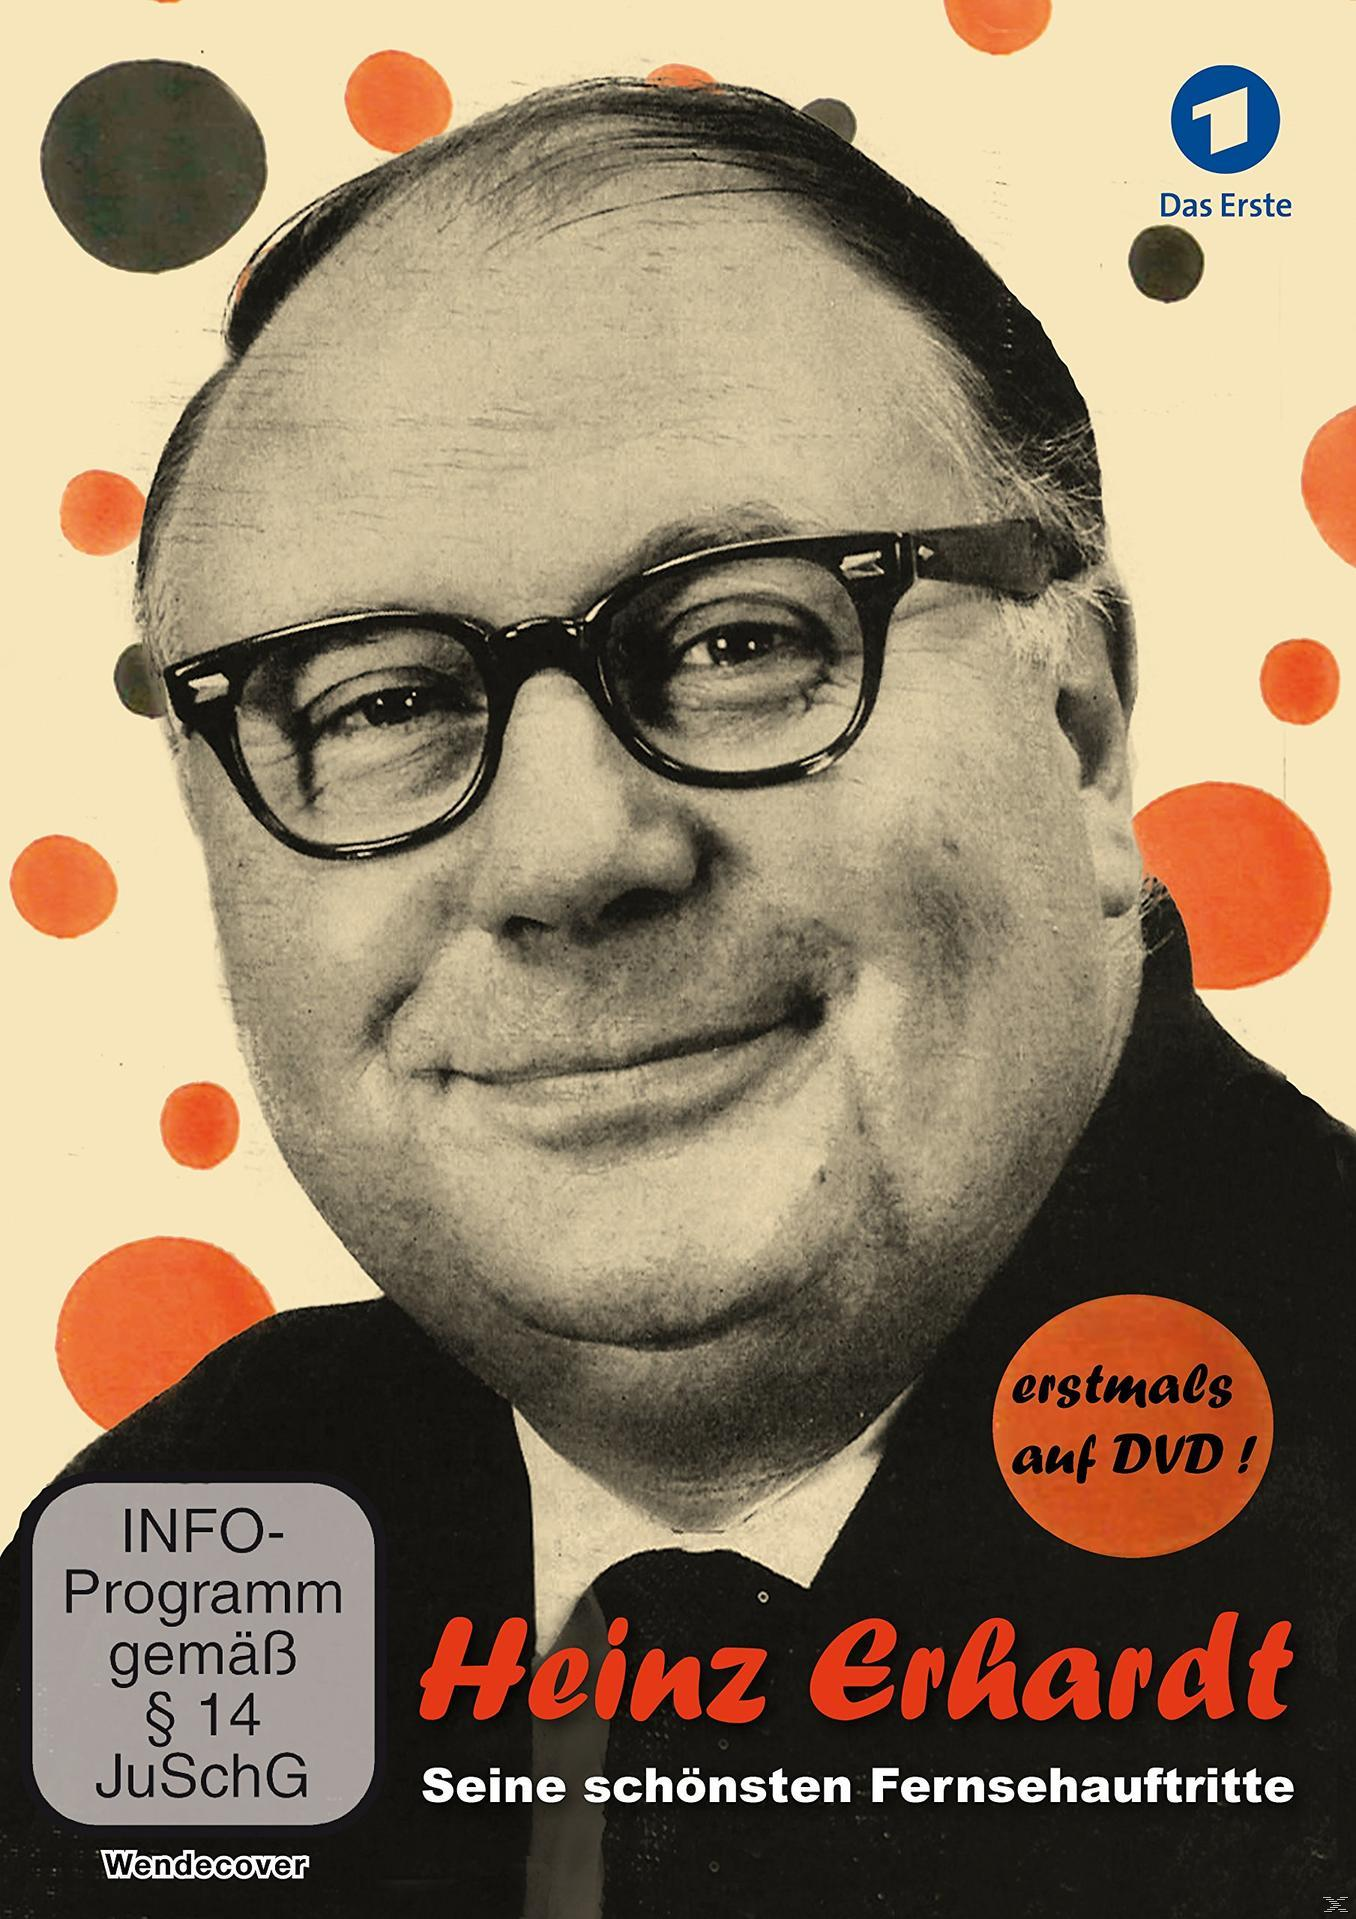 Heinz Erhardt - schönsten (1959-1971) Seine DVD Fernsehauftritte